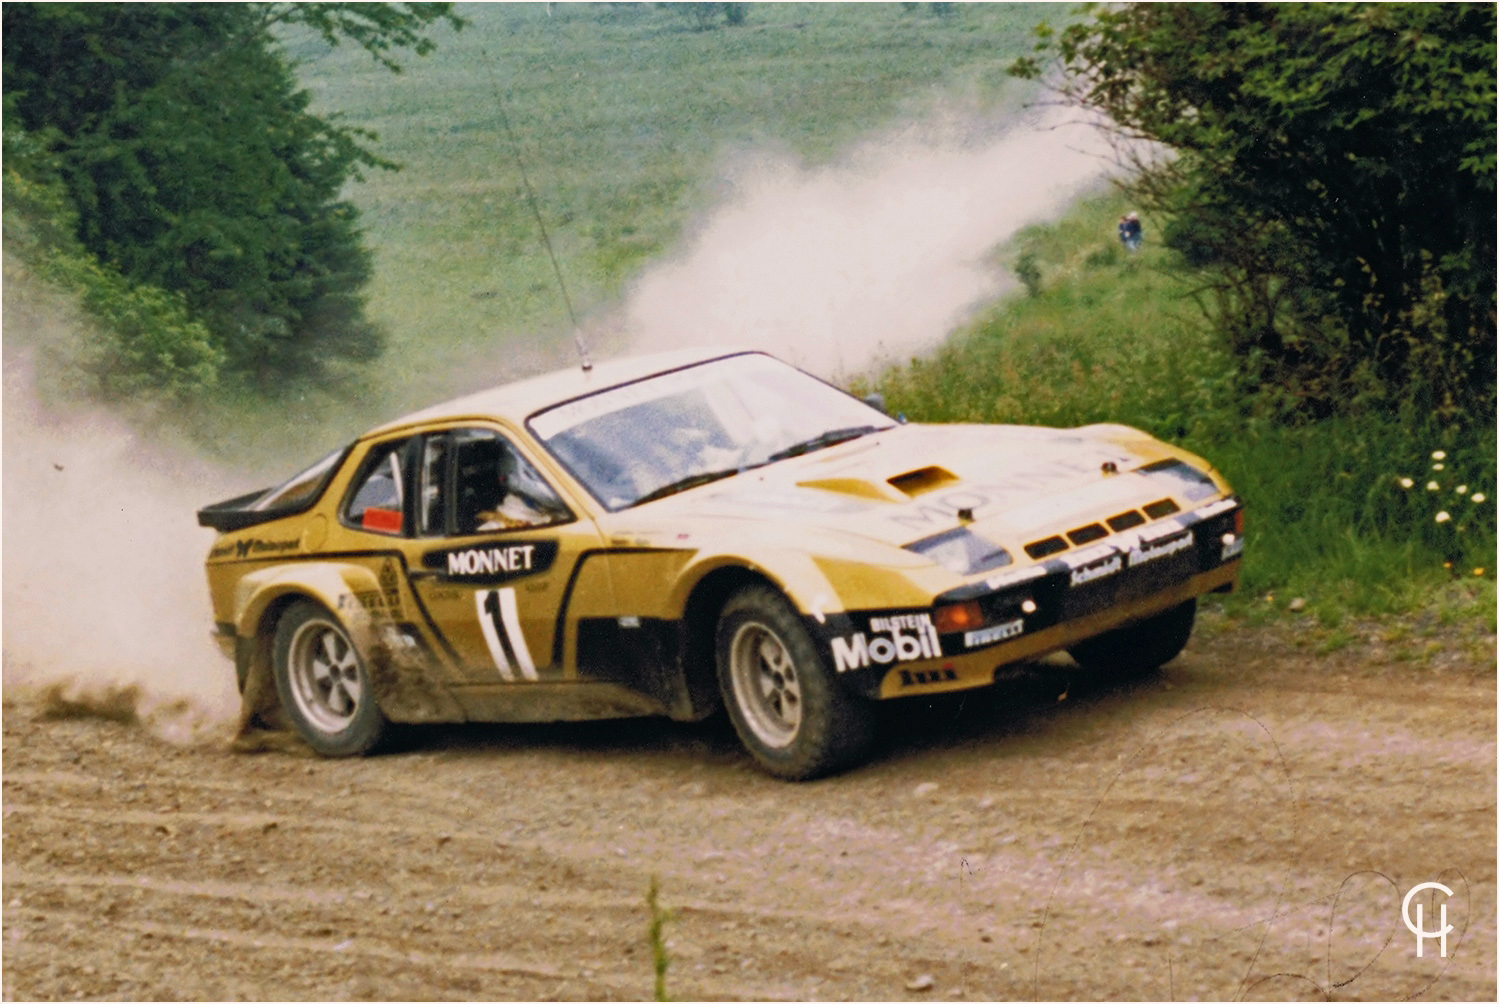 Walter Röhrl im goldenen Monnet Rallye Porsche 924 GTS Turbo bei der ADAC Rallye Hessen 1981